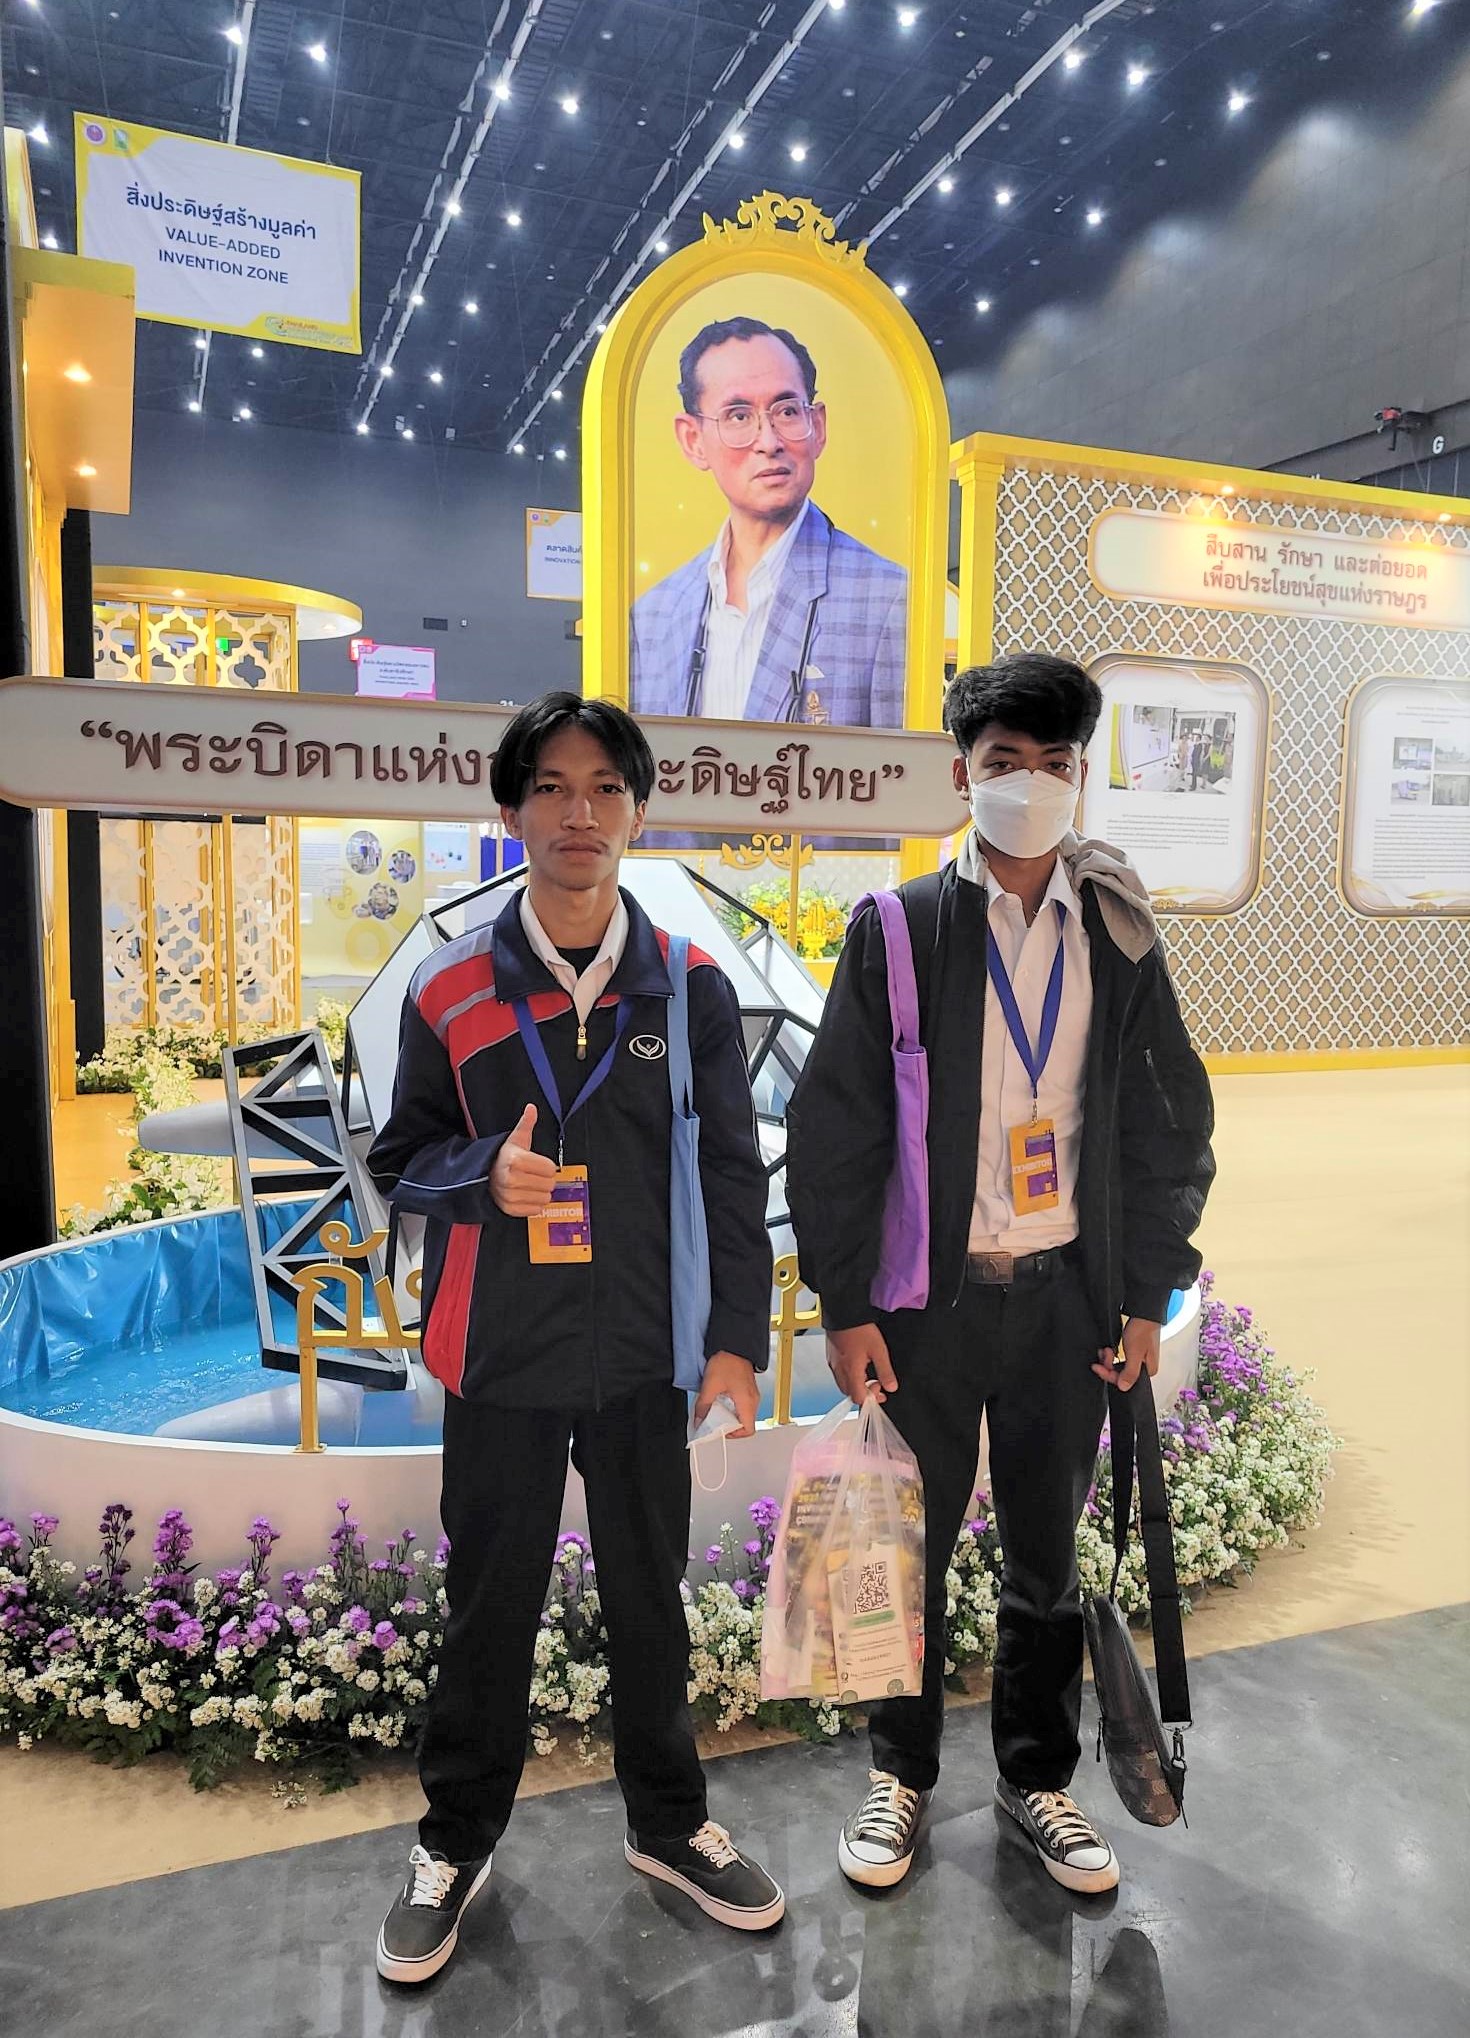 ม.นครพนม คว้ารางวัลระดับเหรียญเงิน 4 ผลงาน และรางวัล Popular Vote 2 ผลงาน จากการแข่งขันโครงการ Thailand New Gen Inventors Award 2023